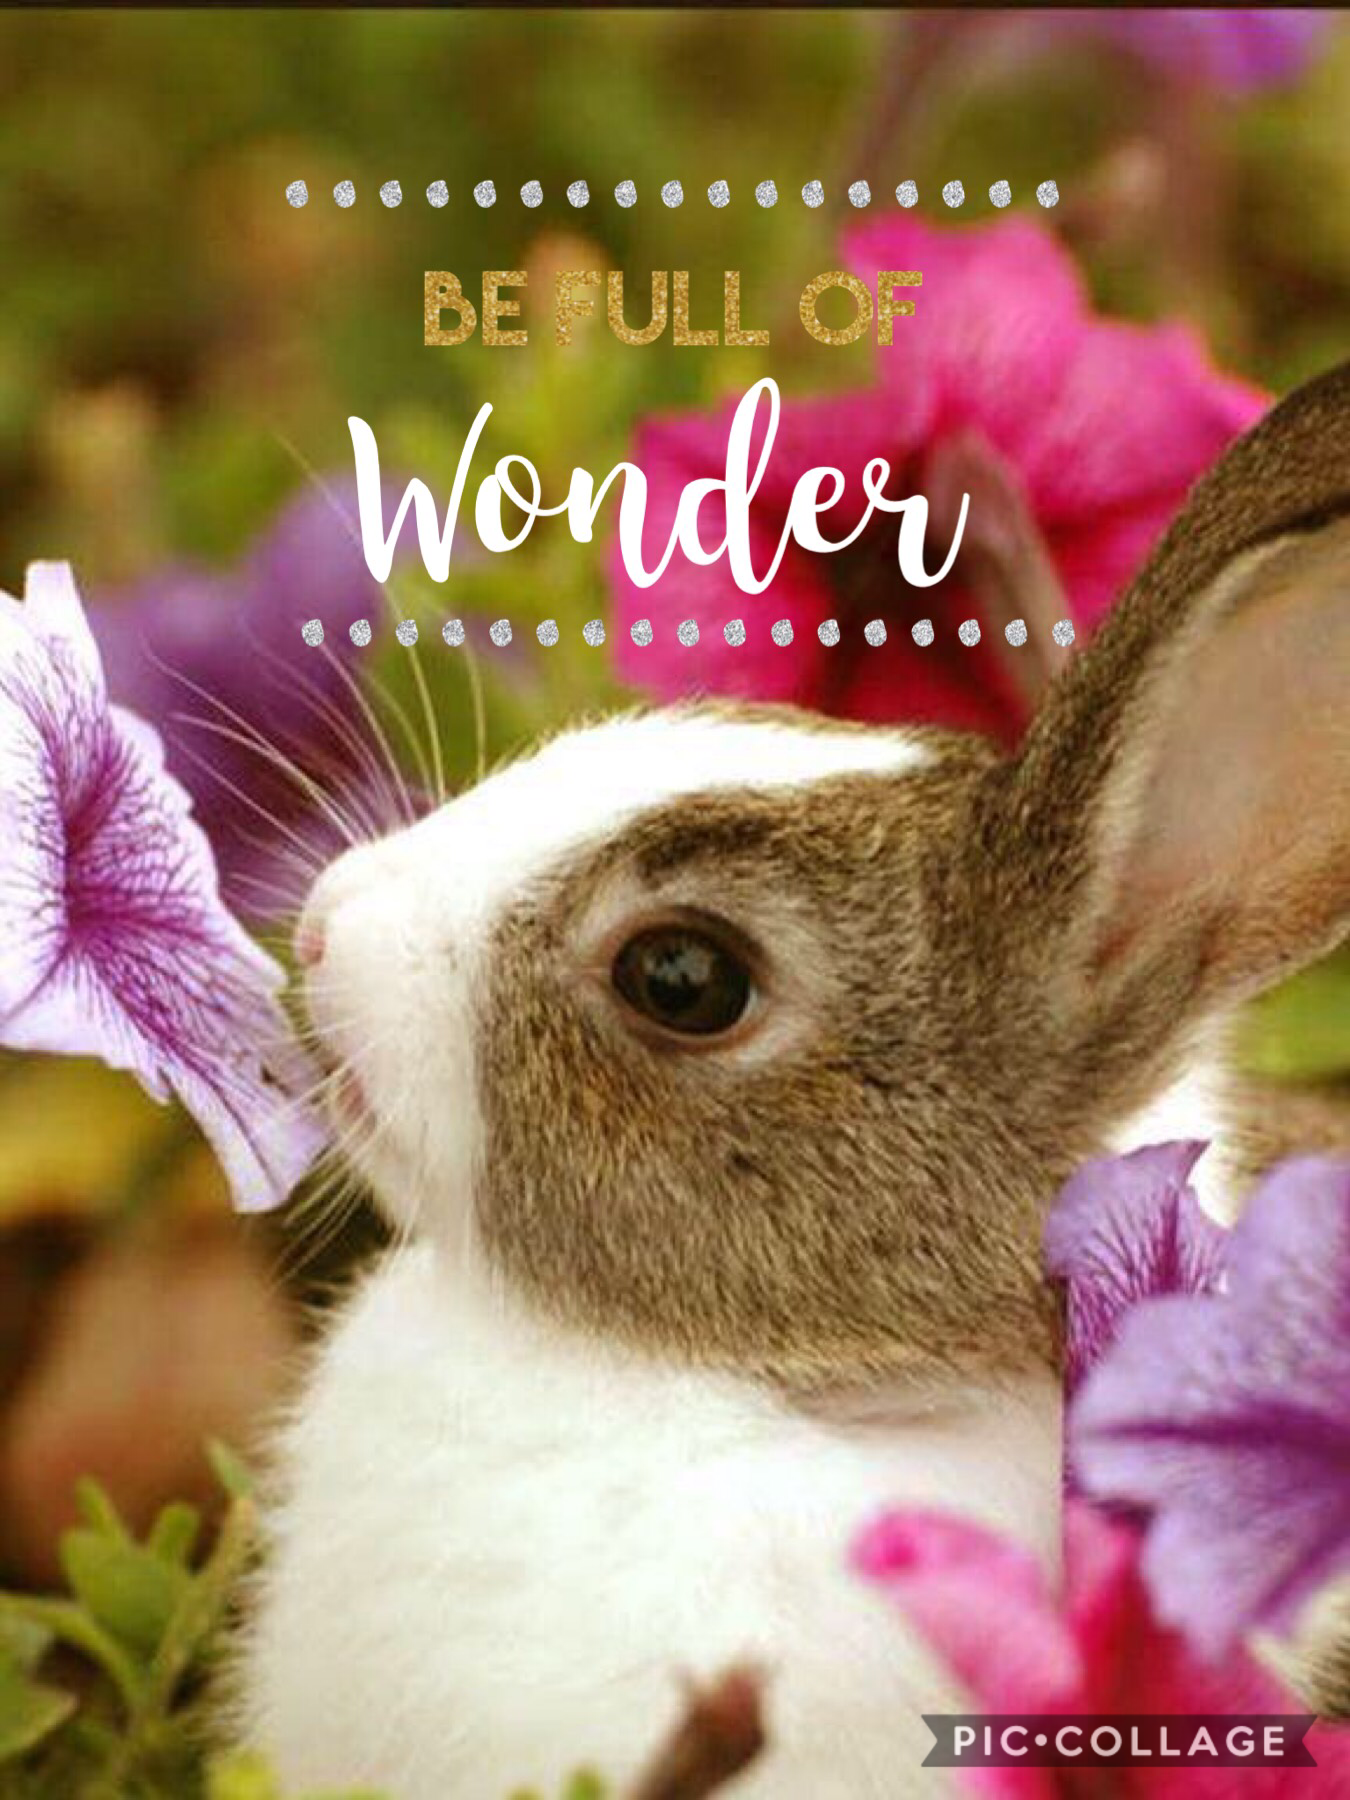 Be full of wonder
